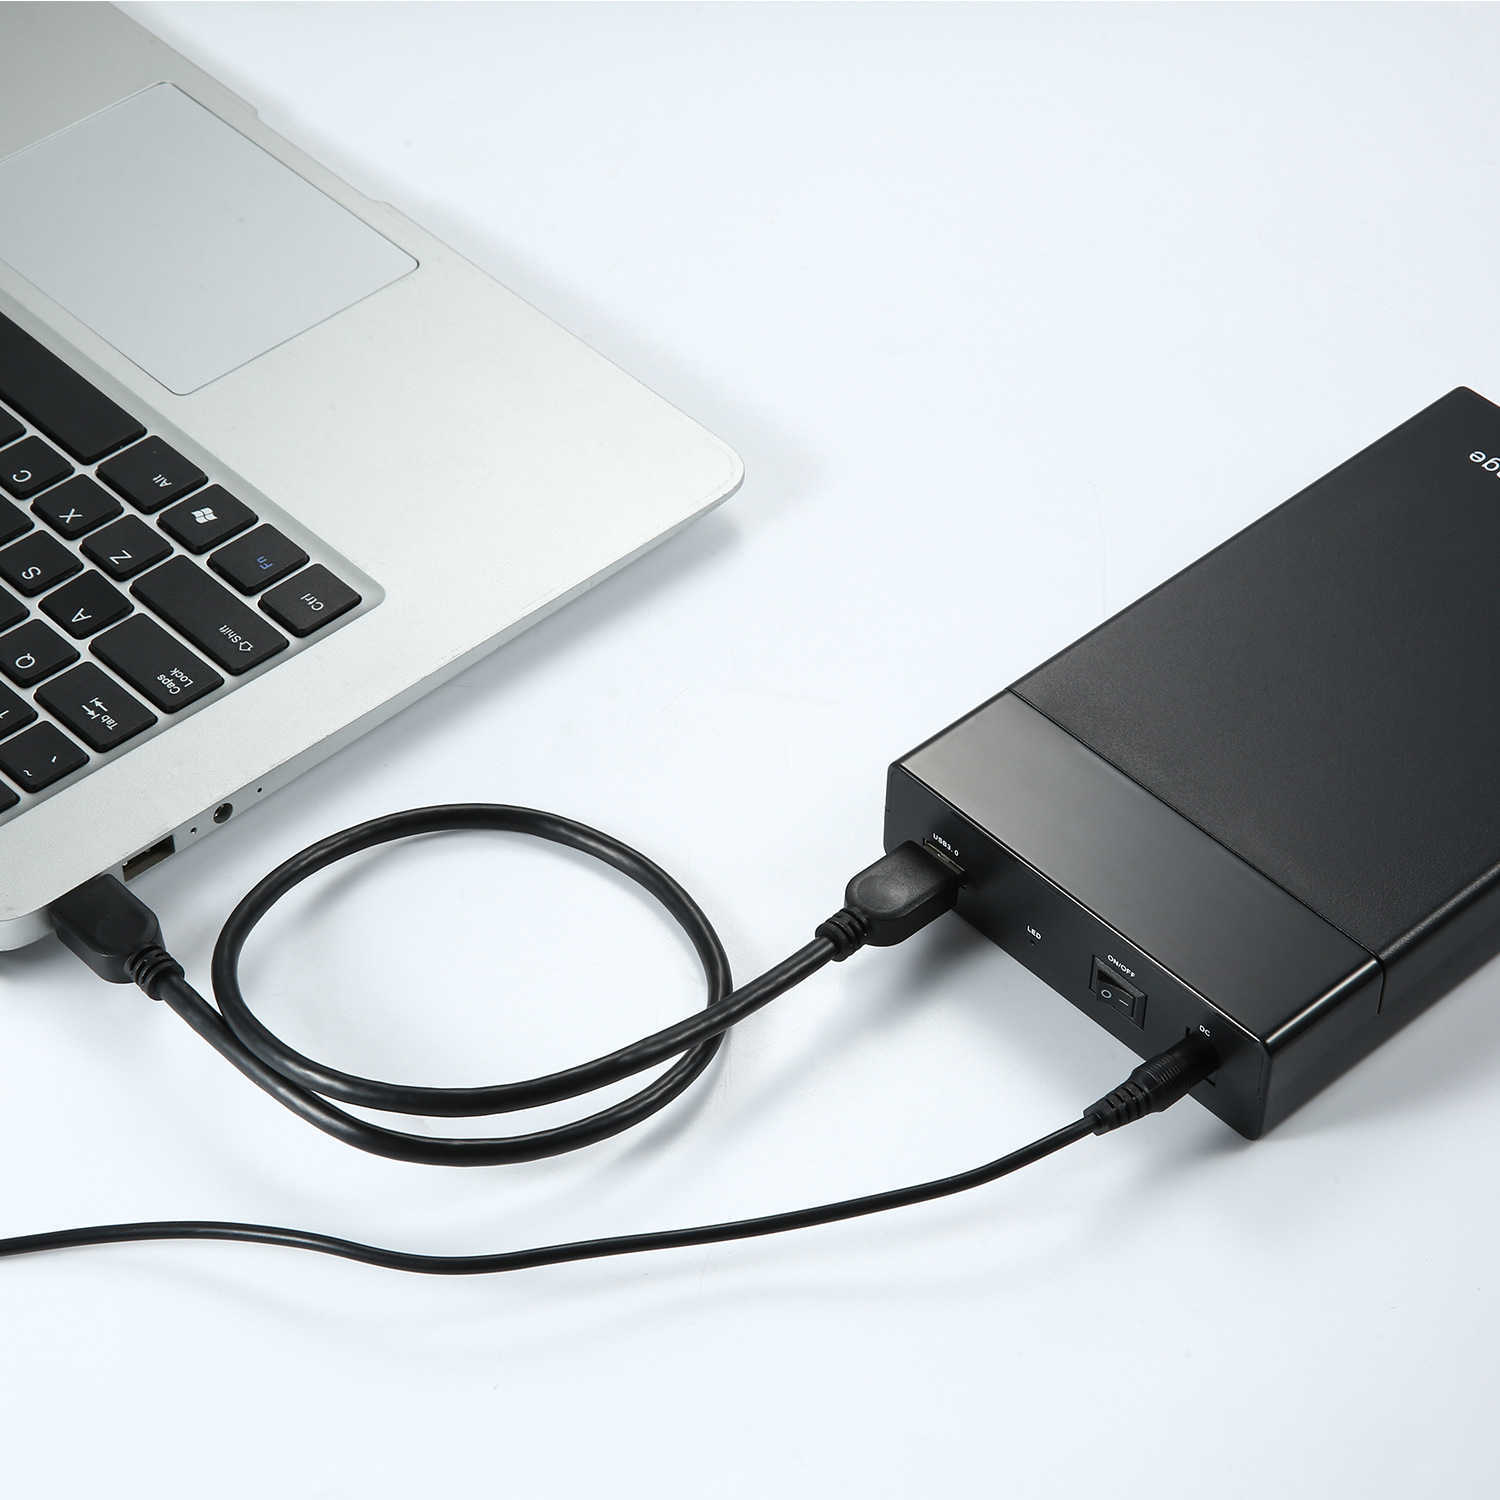 5 Gbps USB 3.0 Mobile Hard Disk Box 2.5 3.5 pollici SATA Supporta varie unità meccaniche e stato solido SSD